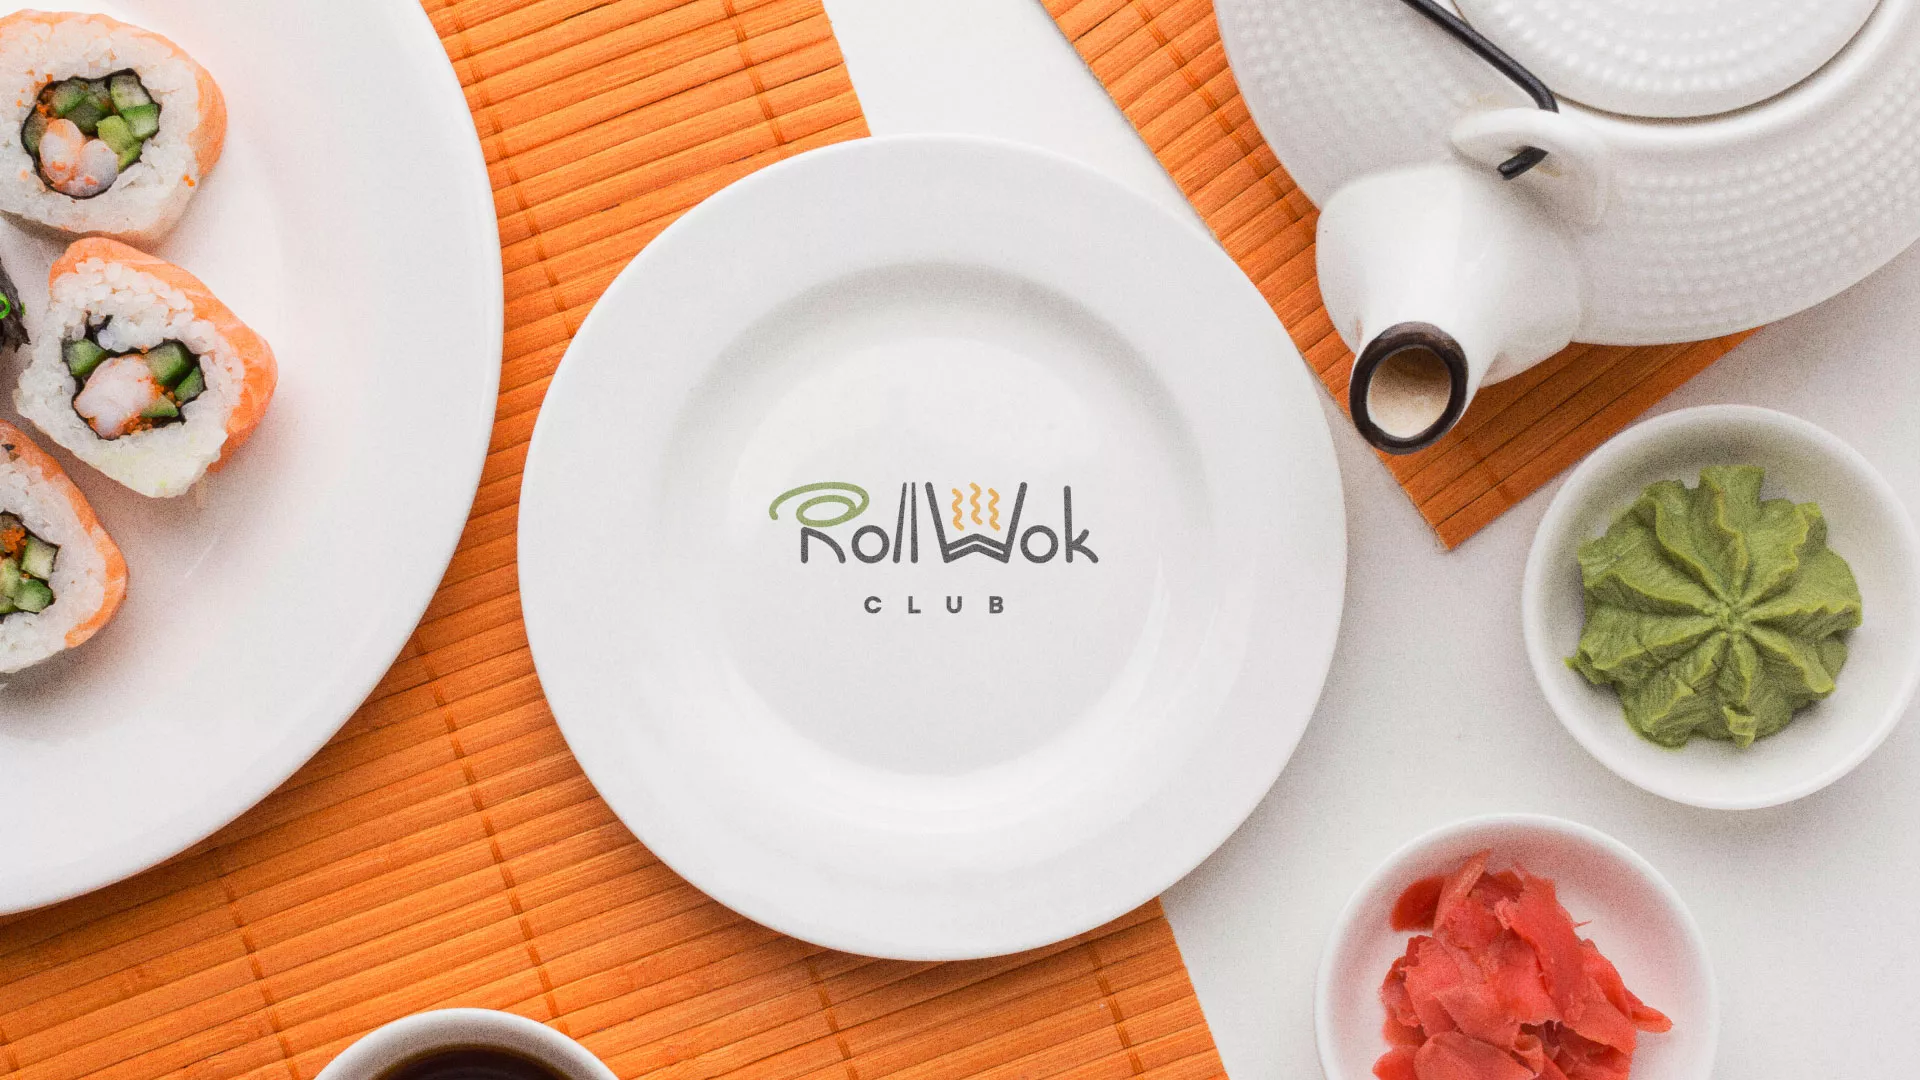 Разработка логотипа и фирменного стиля суши-бара «Roll Wok Club» в Майском